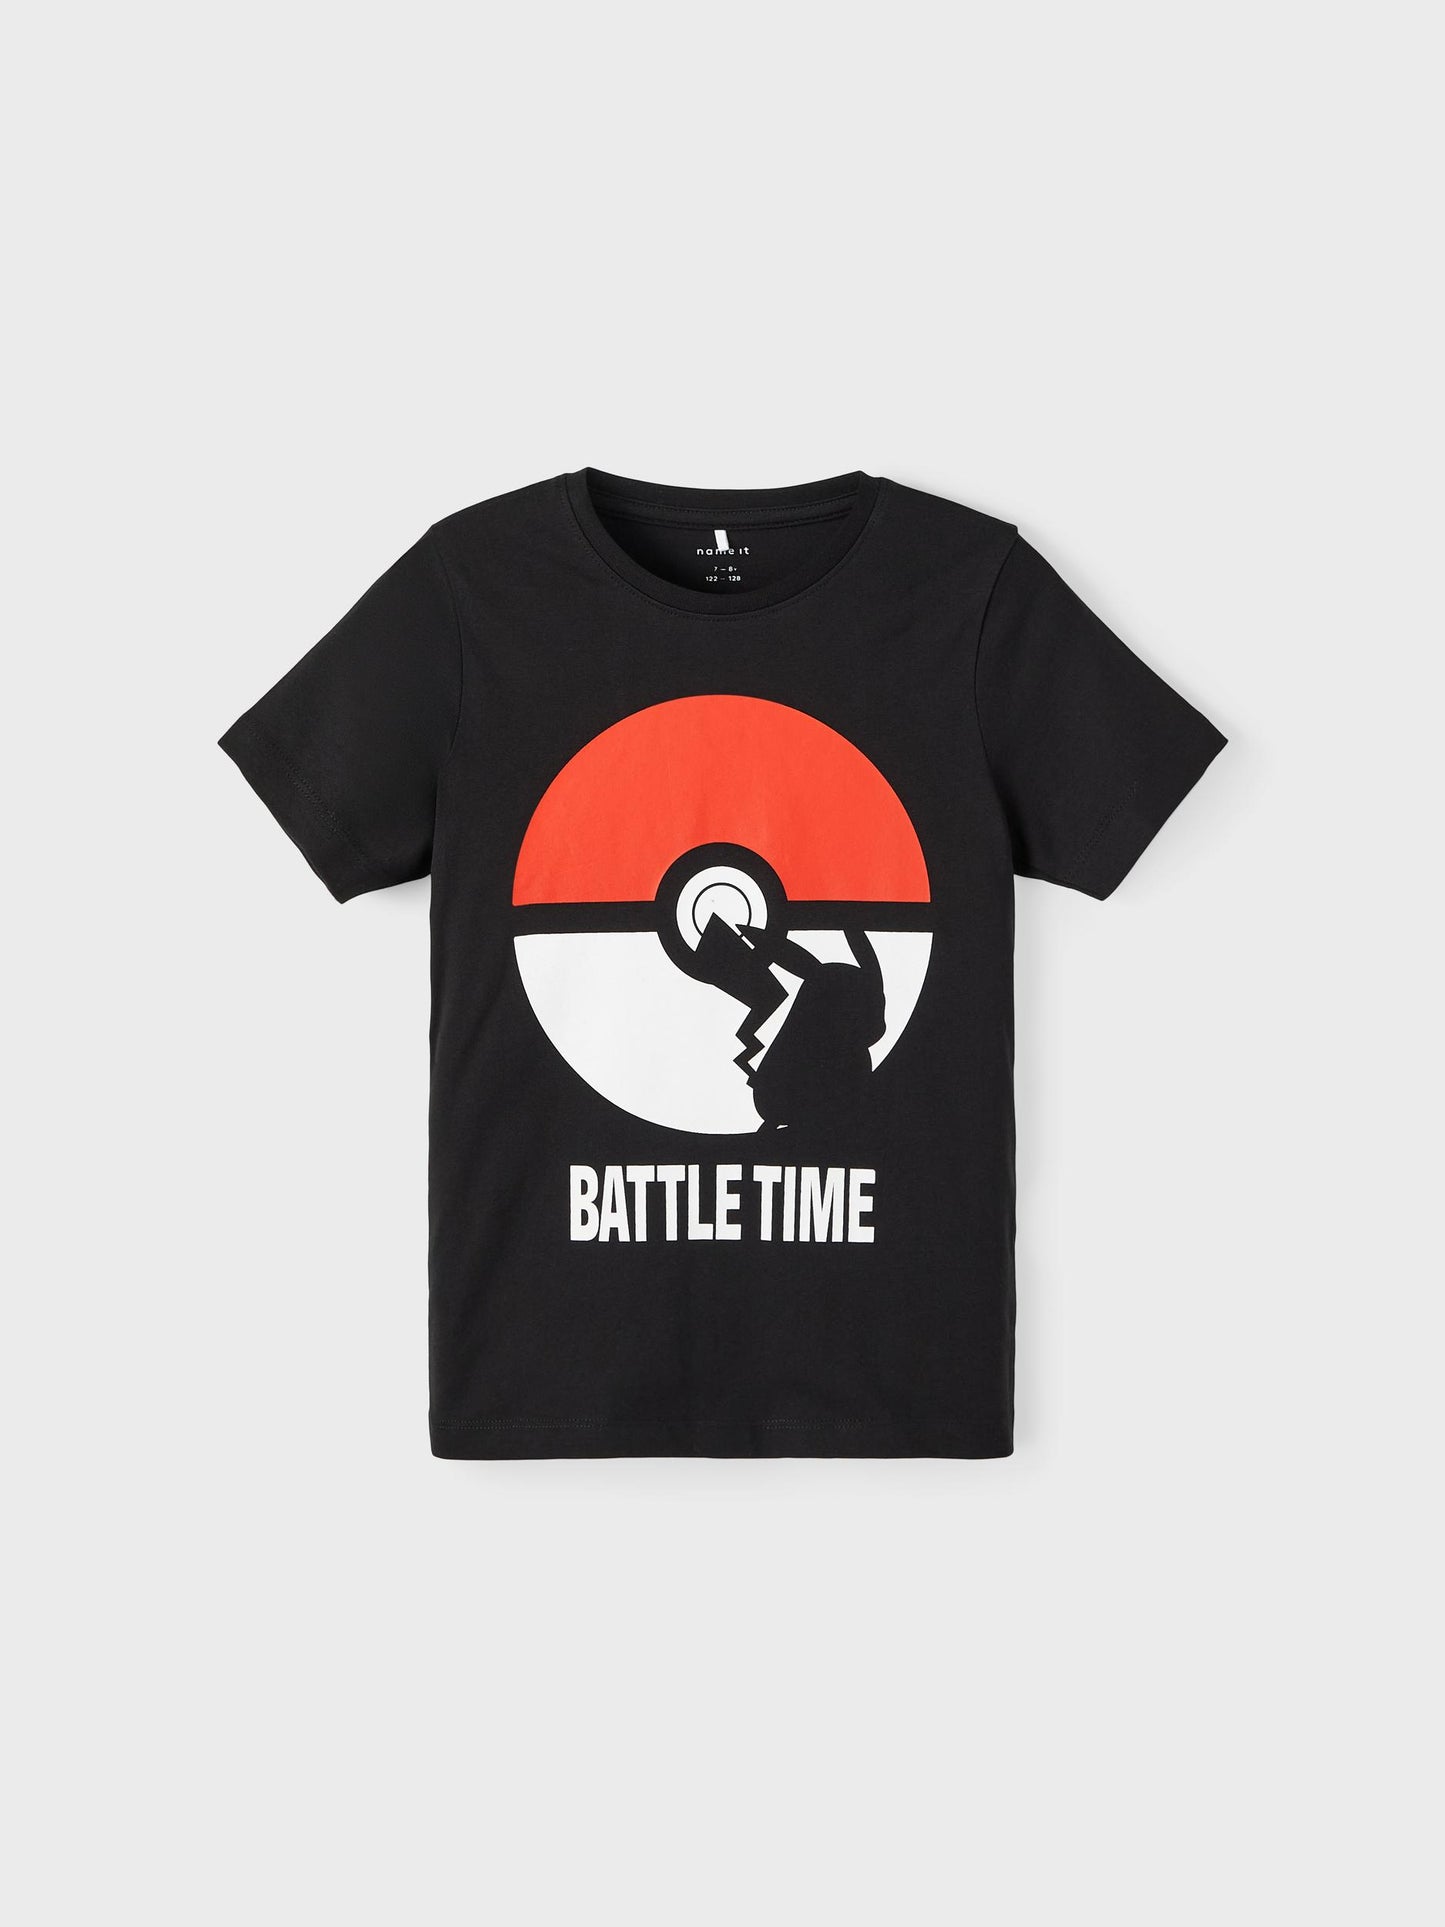 Pokémon T-shirt